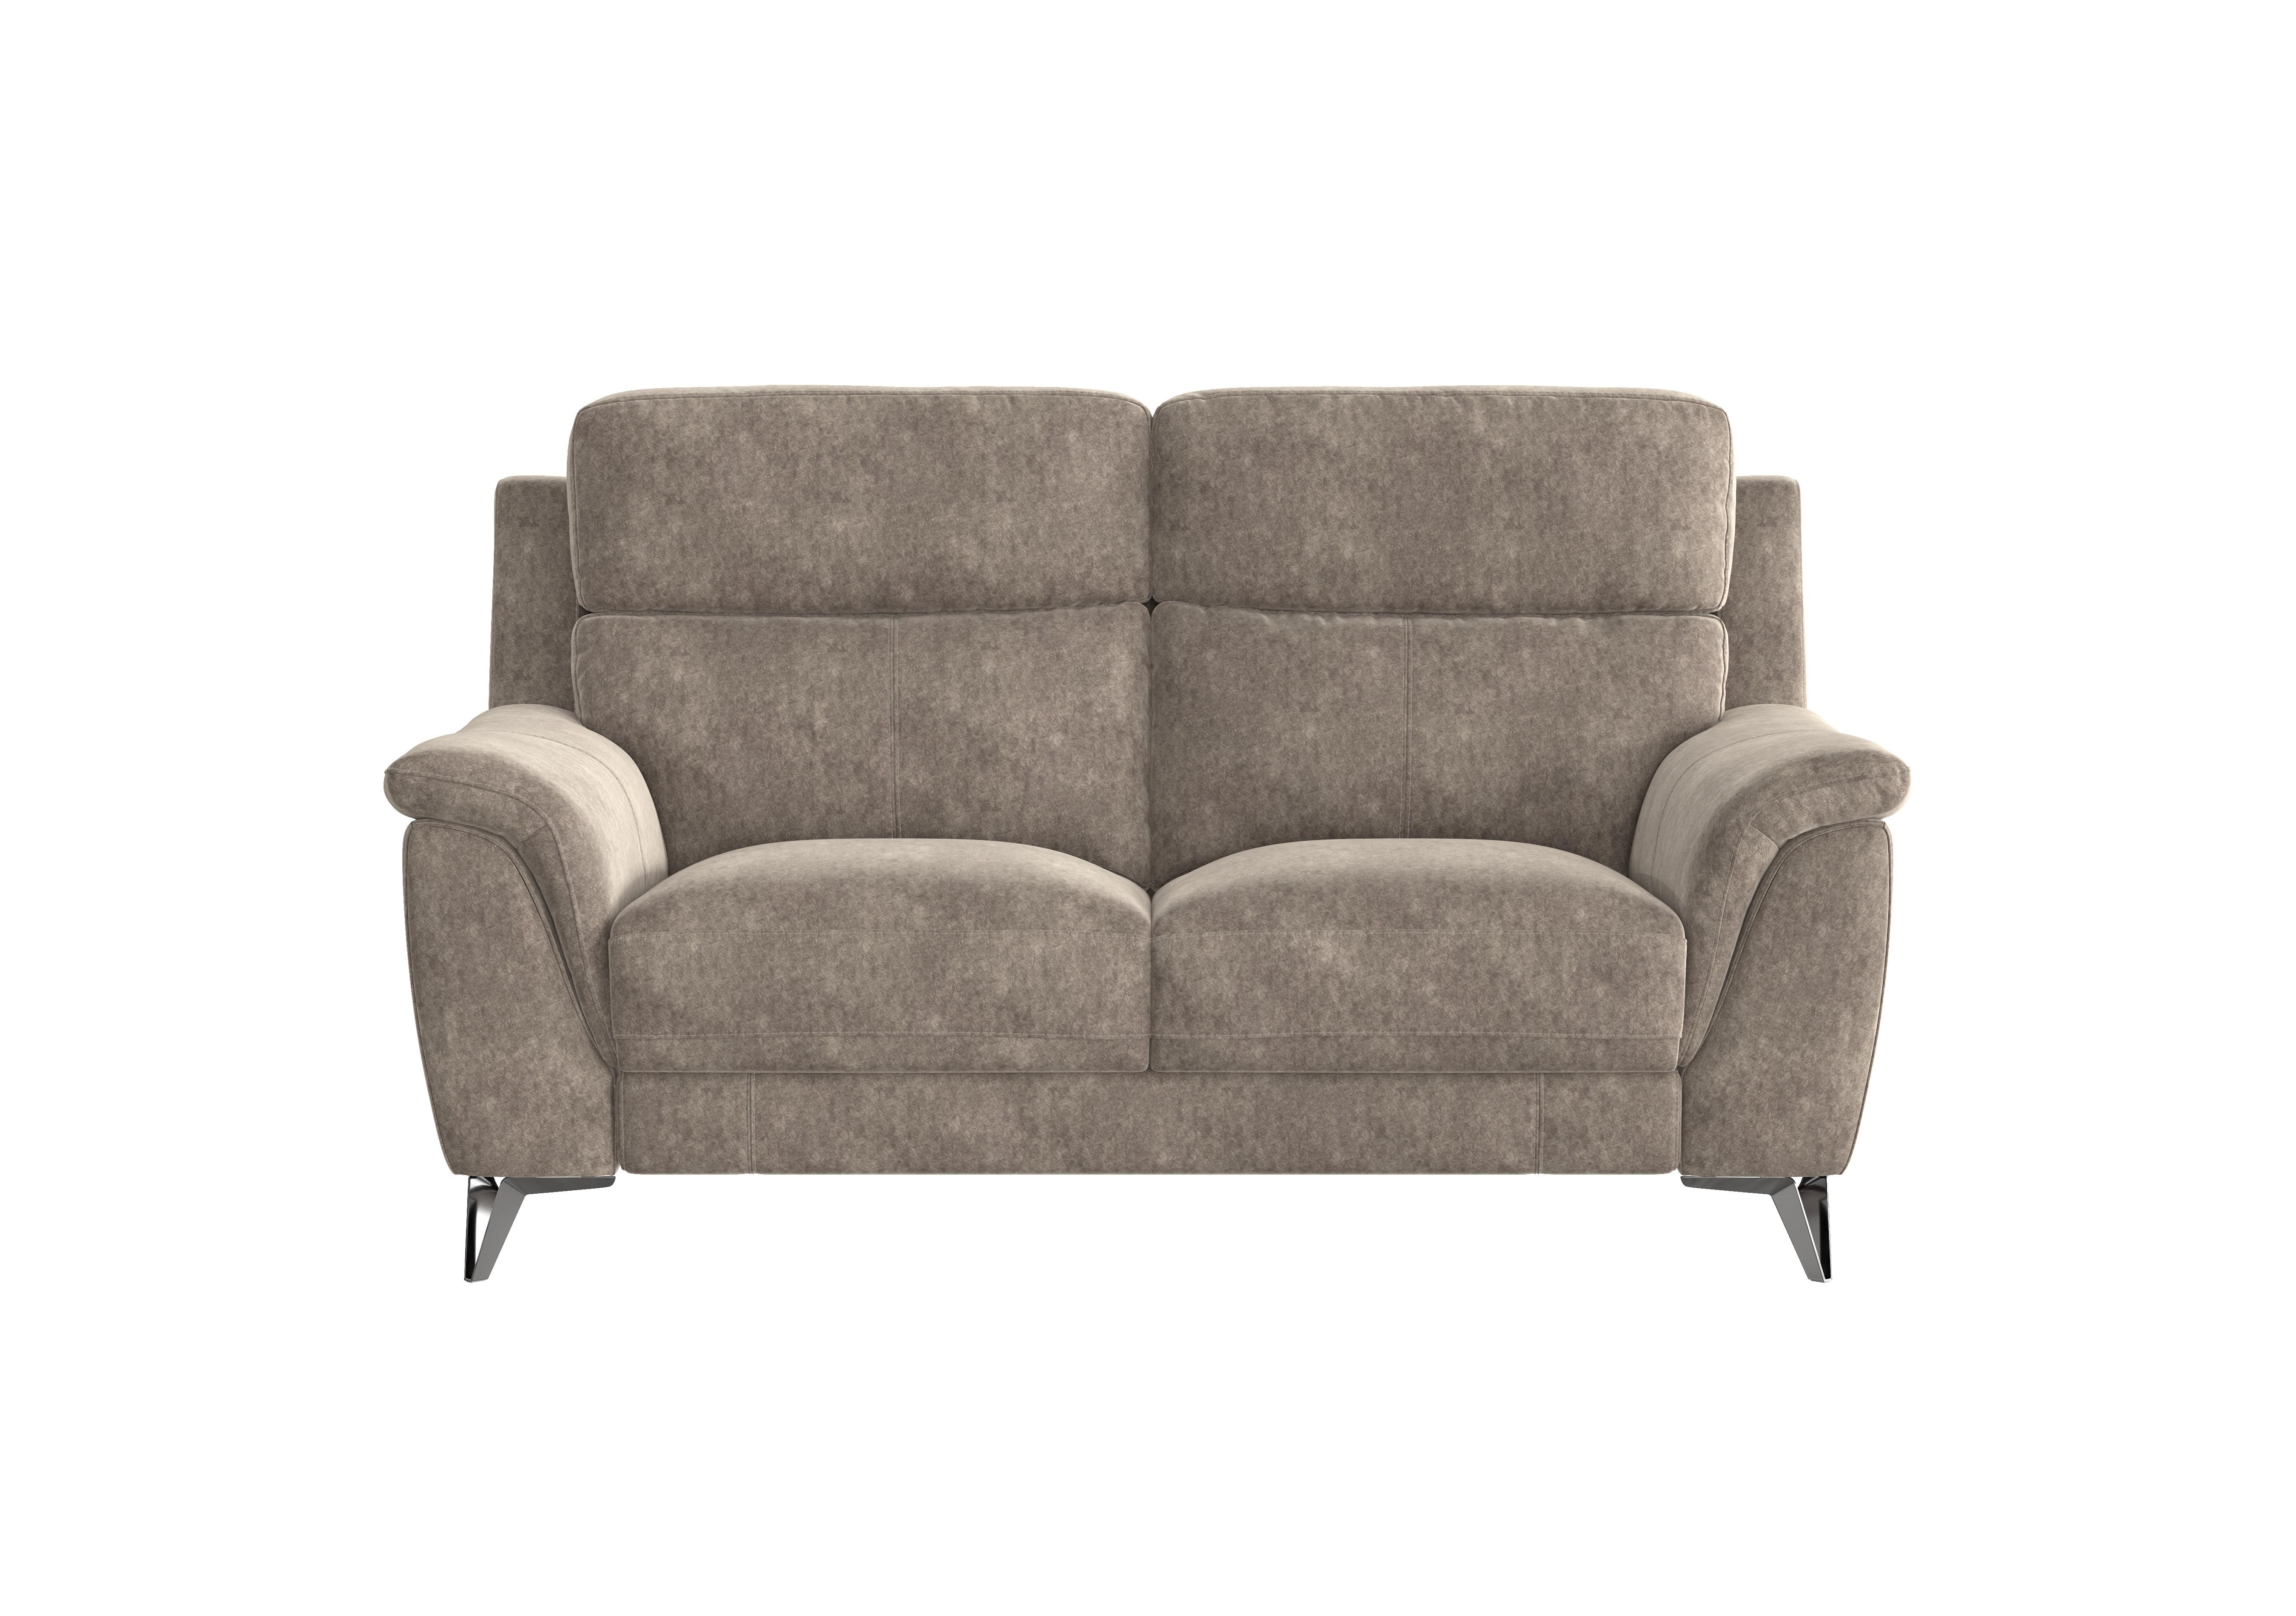 Contempo 2 Seater Fabric Sofa in Bfa-Bnn-R29 Fv1 Mink on Furniture Village